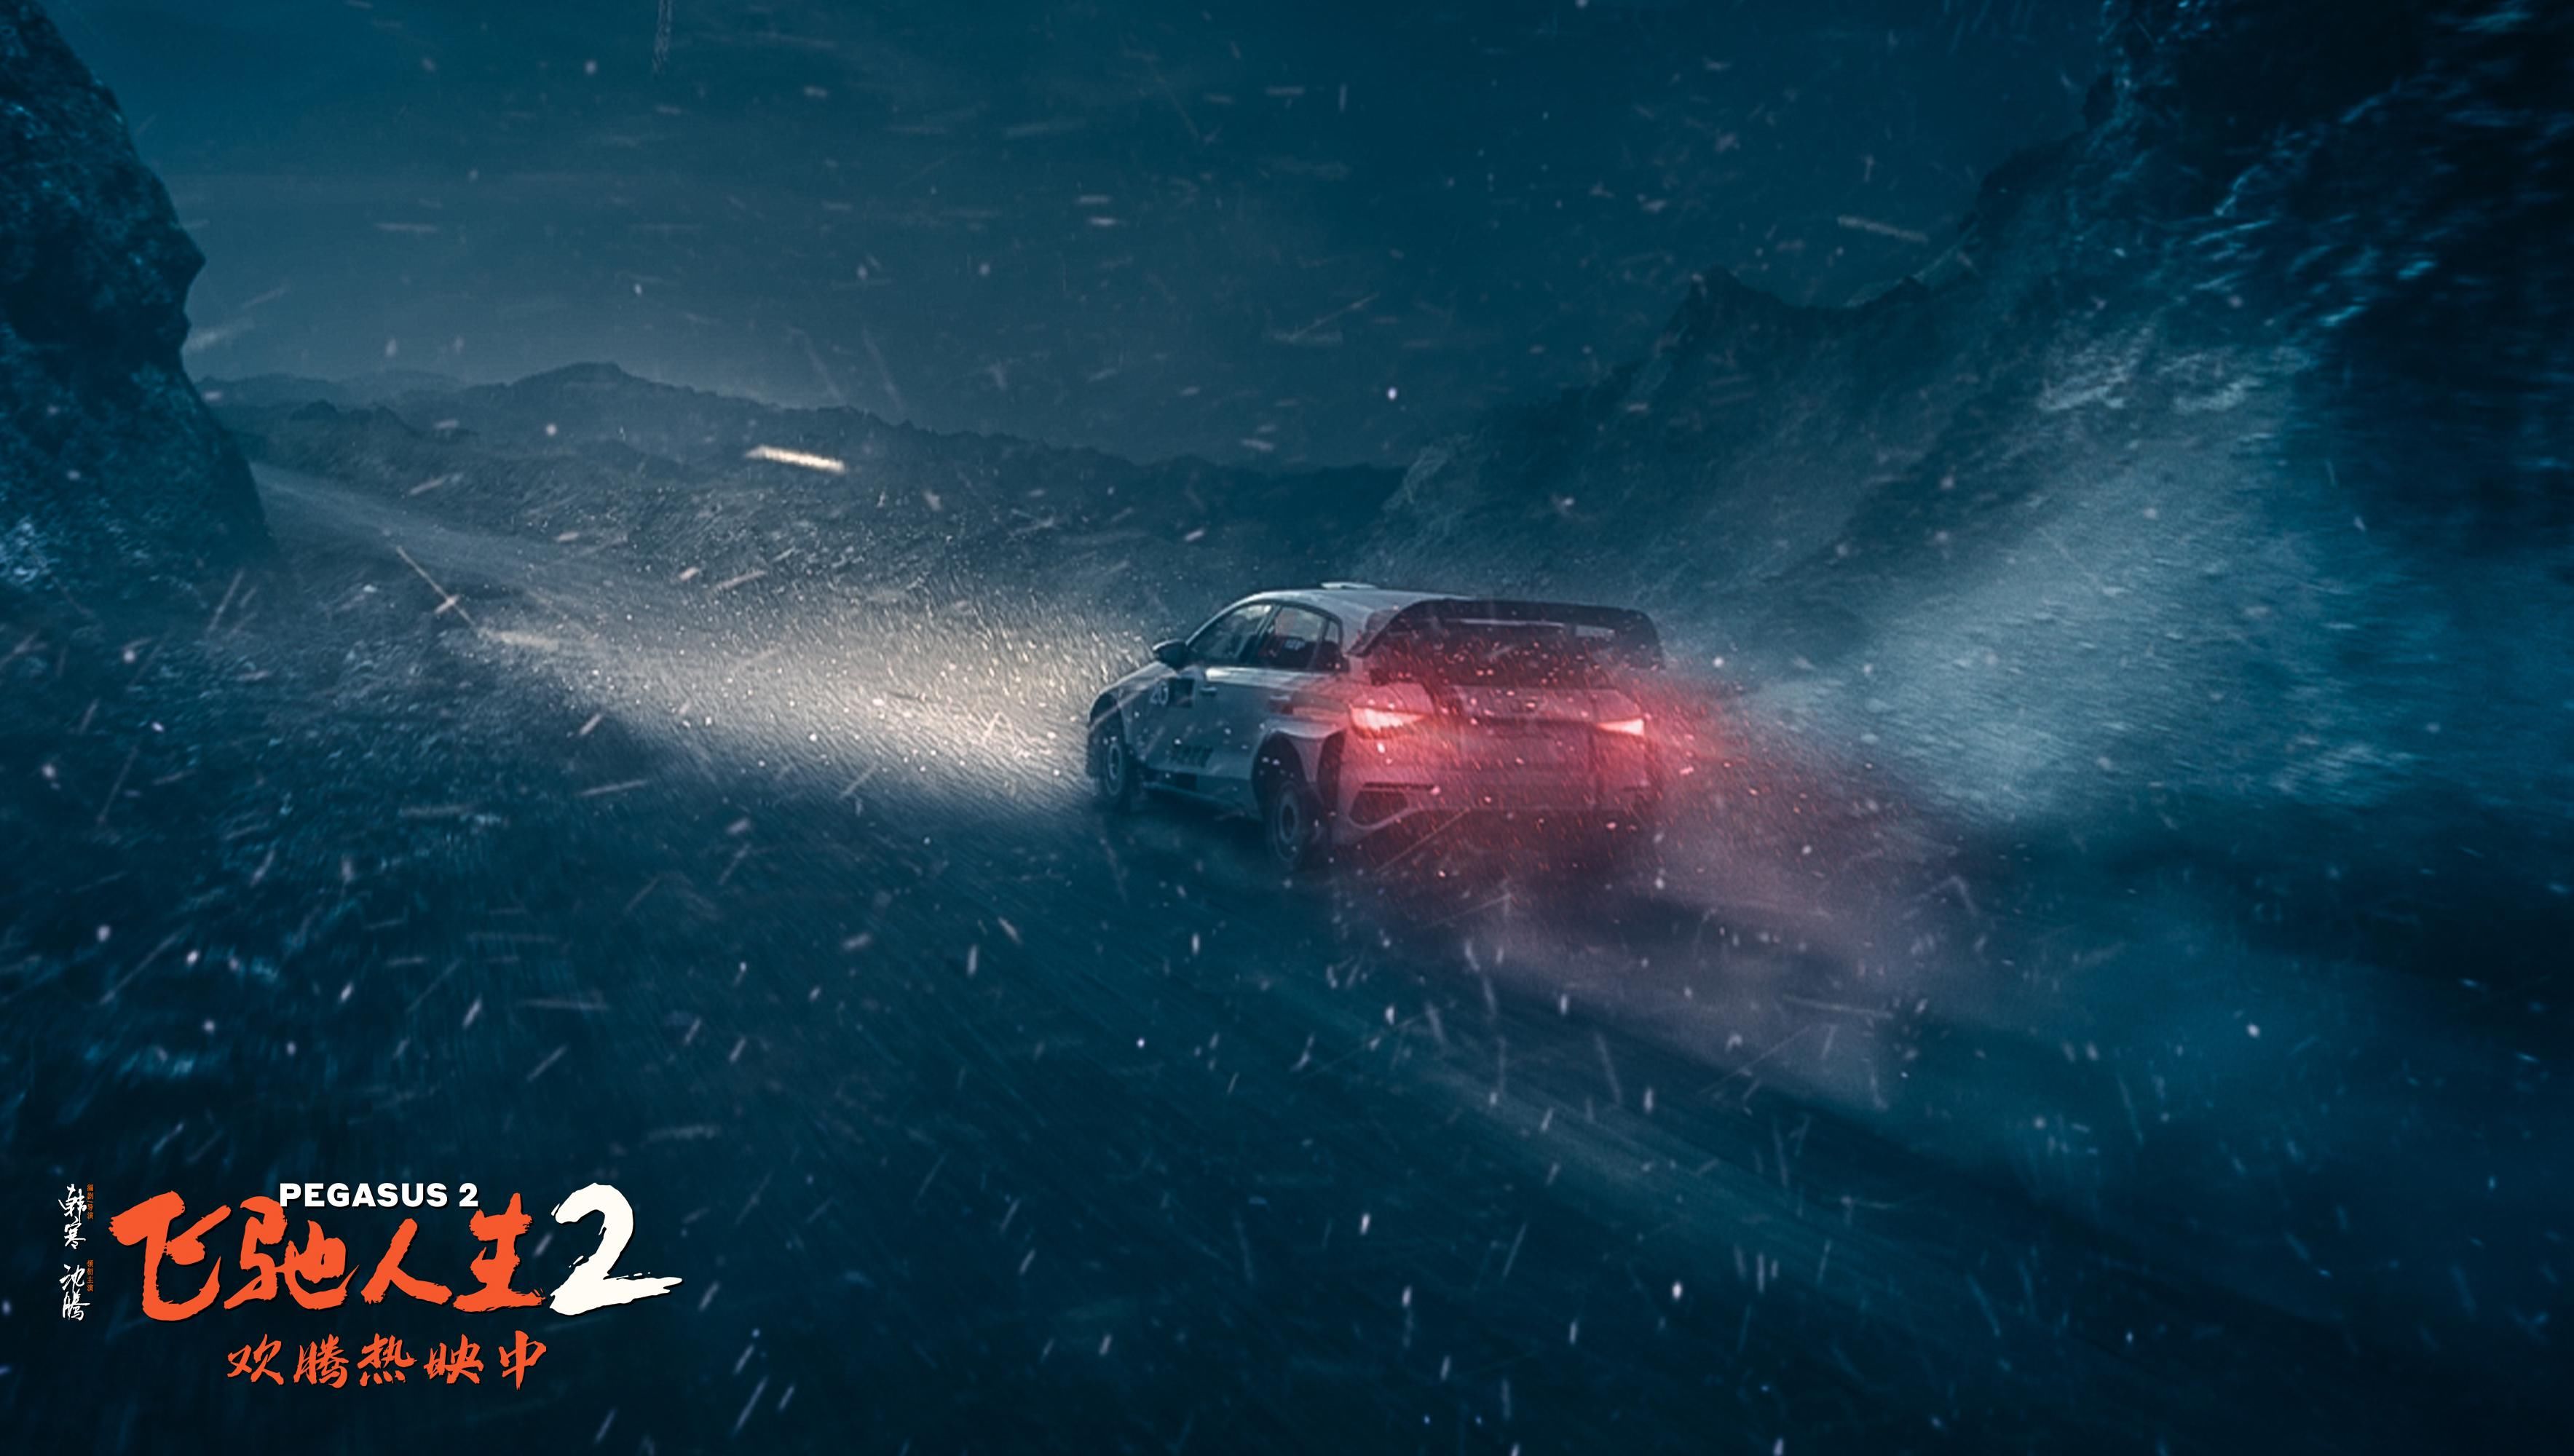 电影《飞驰人生2》发布“极端天气”特辑 还原冰雹风雪奇观营造真实沉浸体验